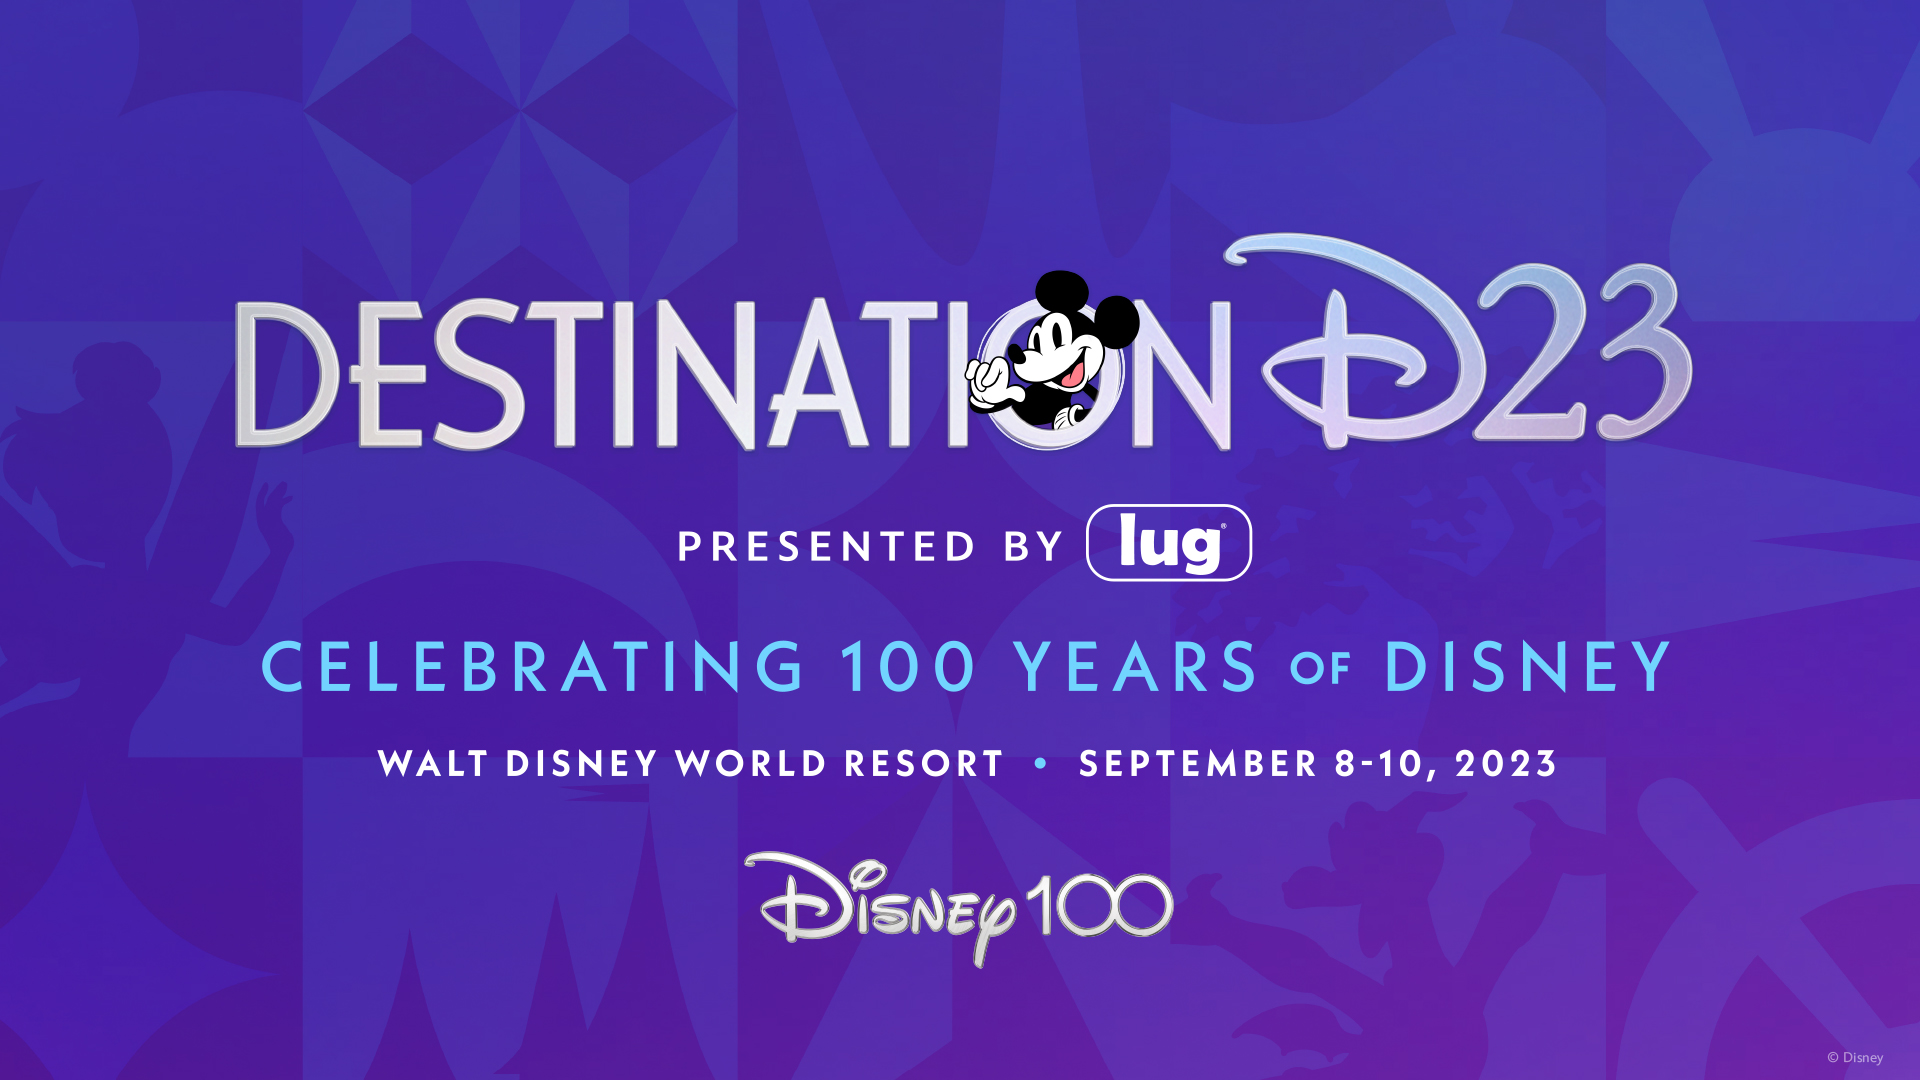 D23 Announces Details on Destination D23 As It Kicks Off Member Appreciation Month